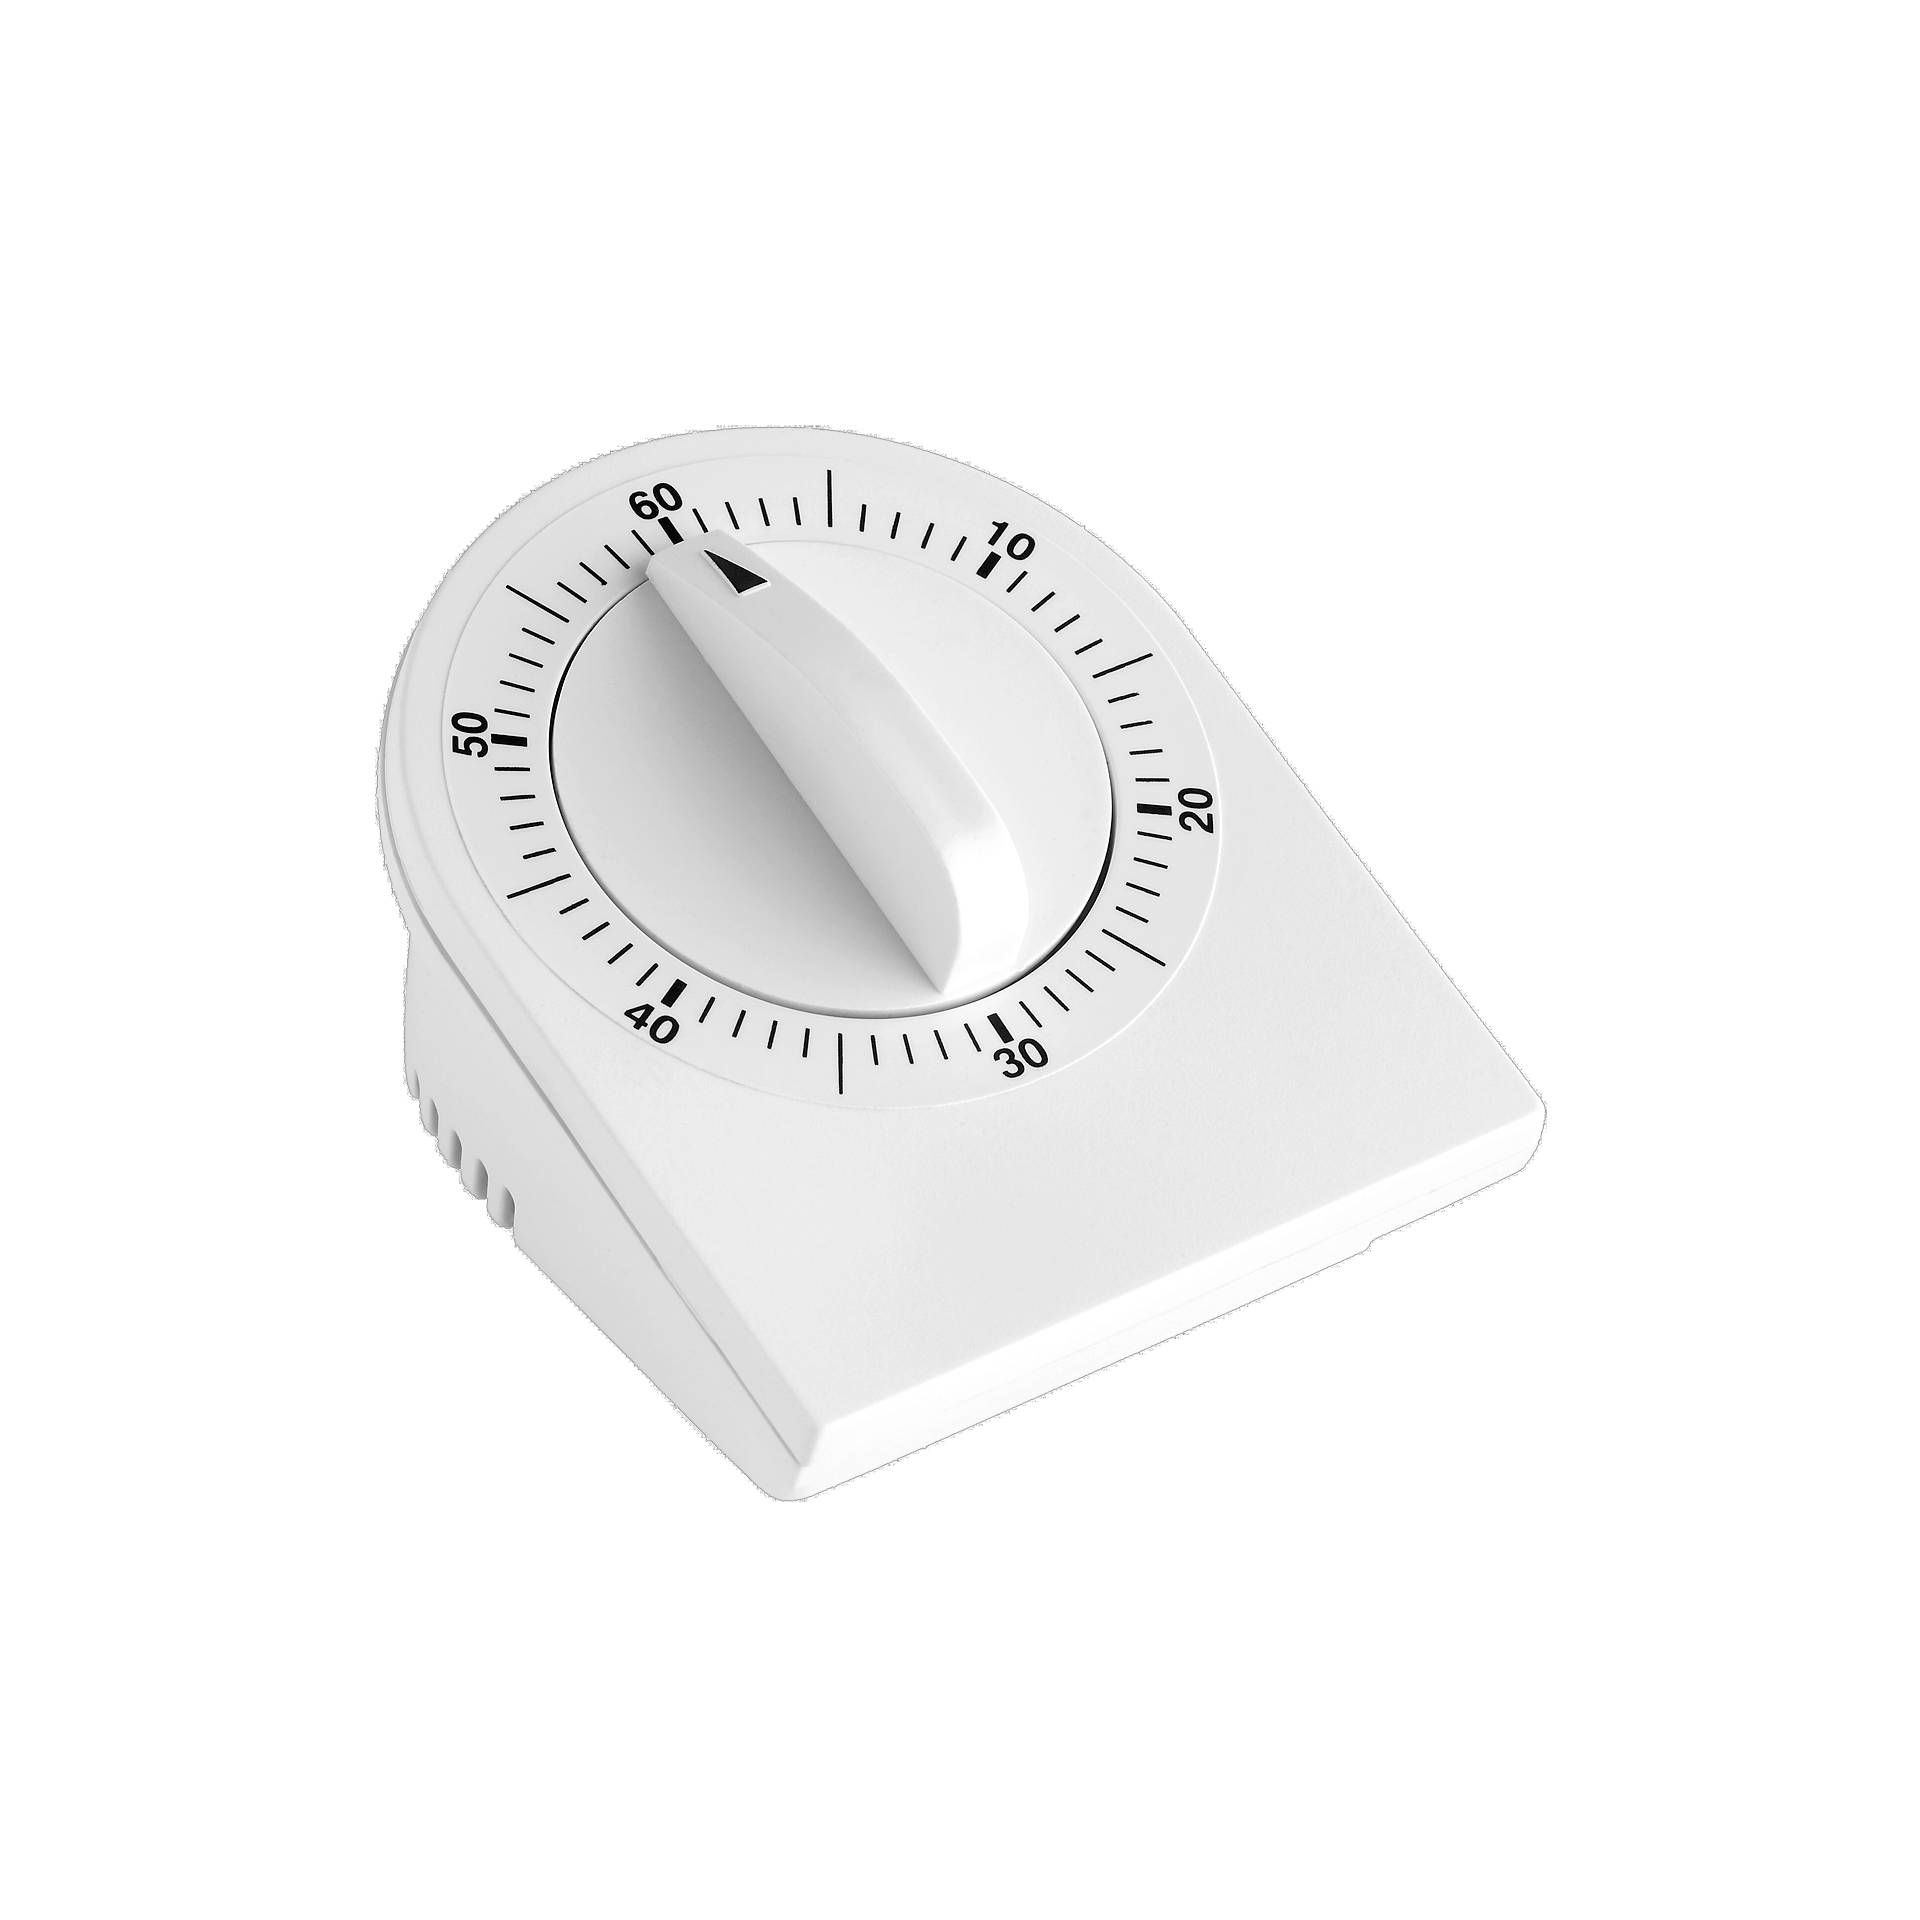 TFA 38.1020 alarm clock/timer